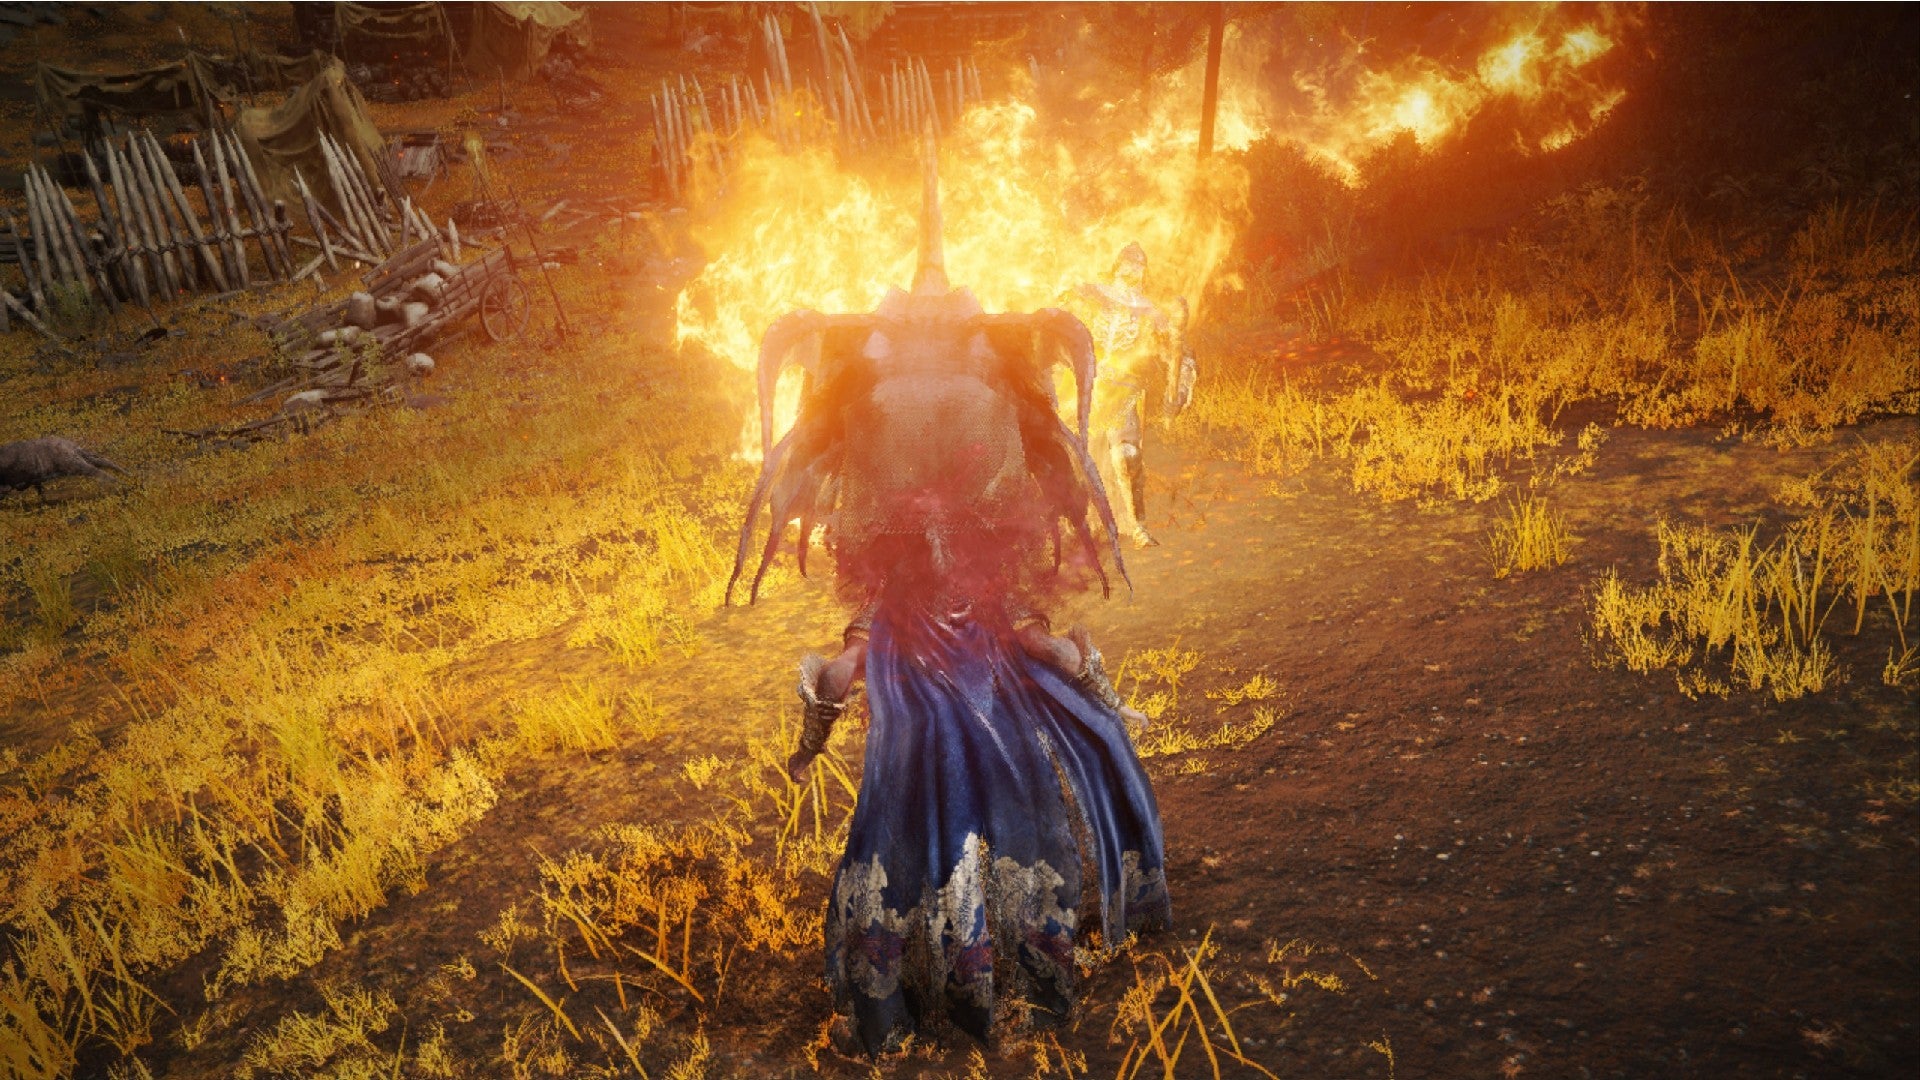 Elden Ring-spelaren använder drakeld på den erdträdskåda kullen